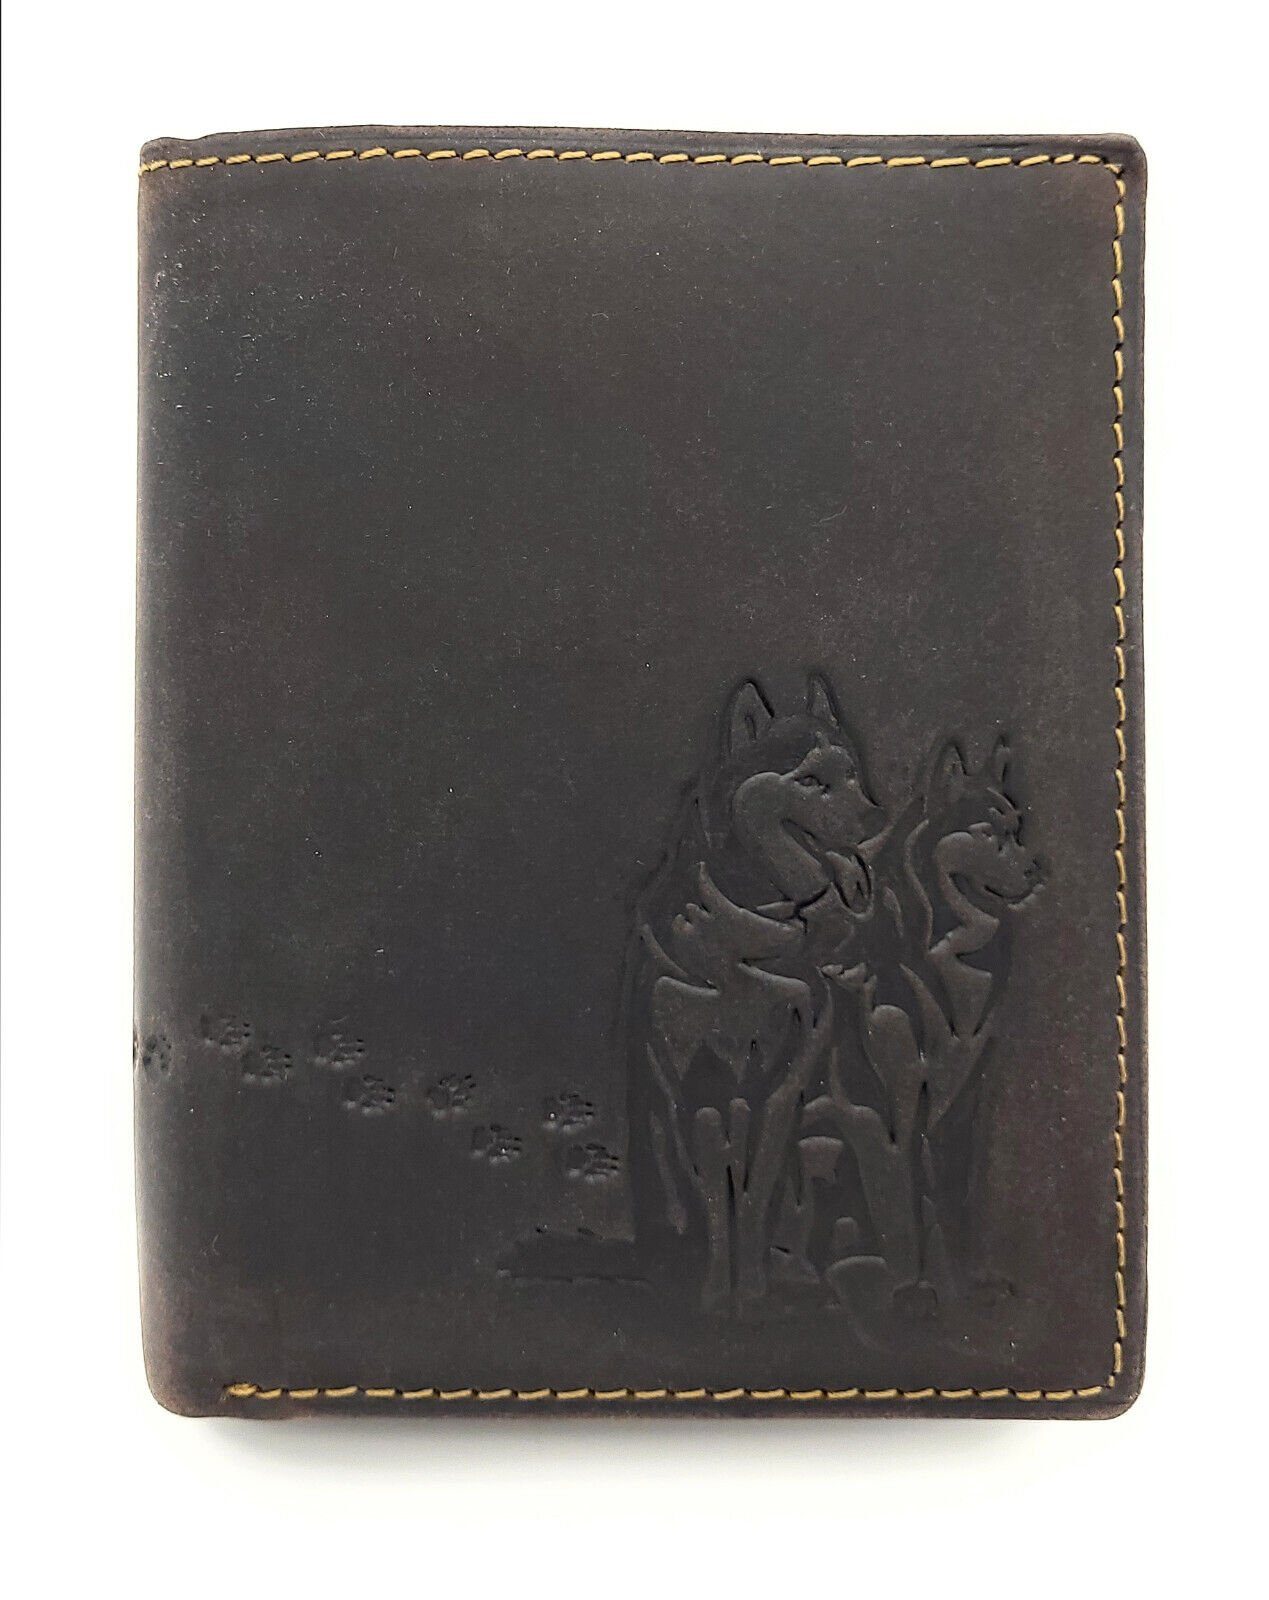 JOCKEY Husky, geprägten echt Geldbörse und Portemonnaie Leder mit RFID Geldbeutel CLUB Huskies mit Pfotenabdrücken Schutz